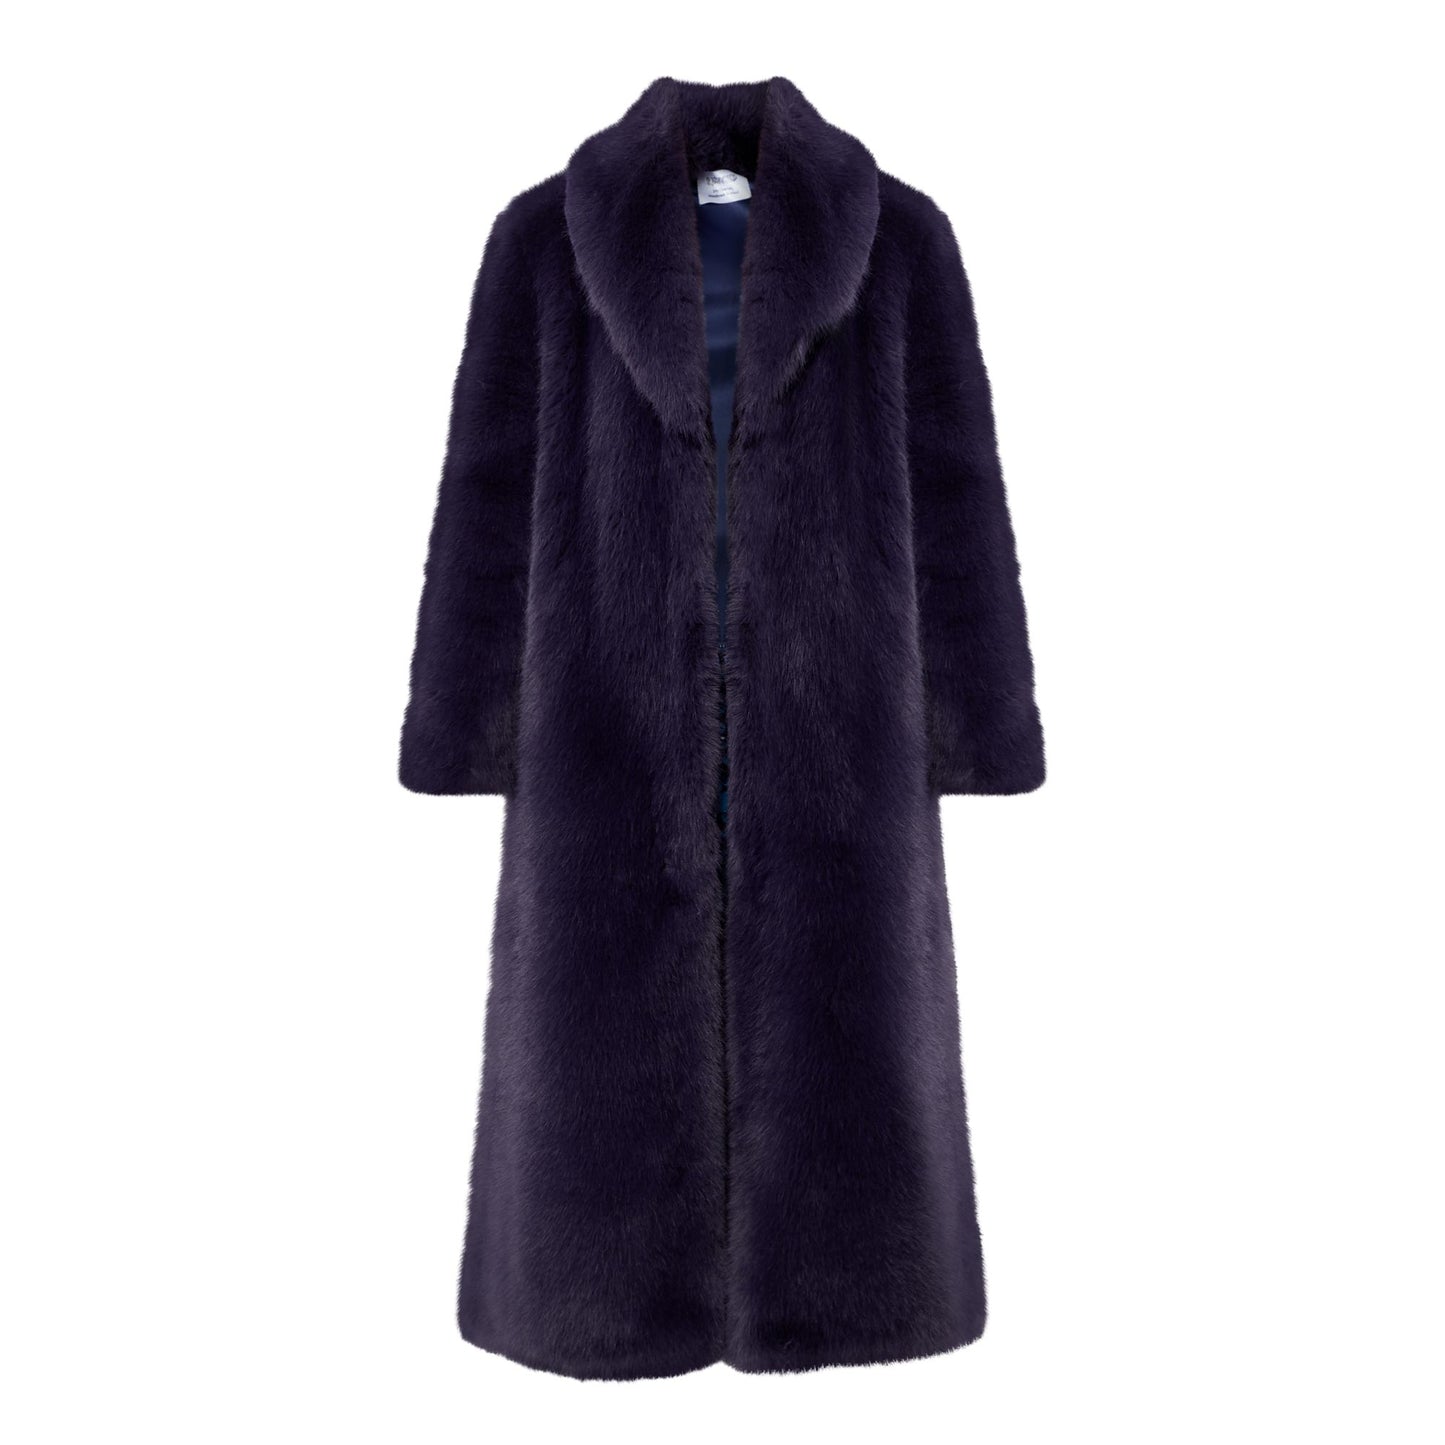 Indigo Purple Coat